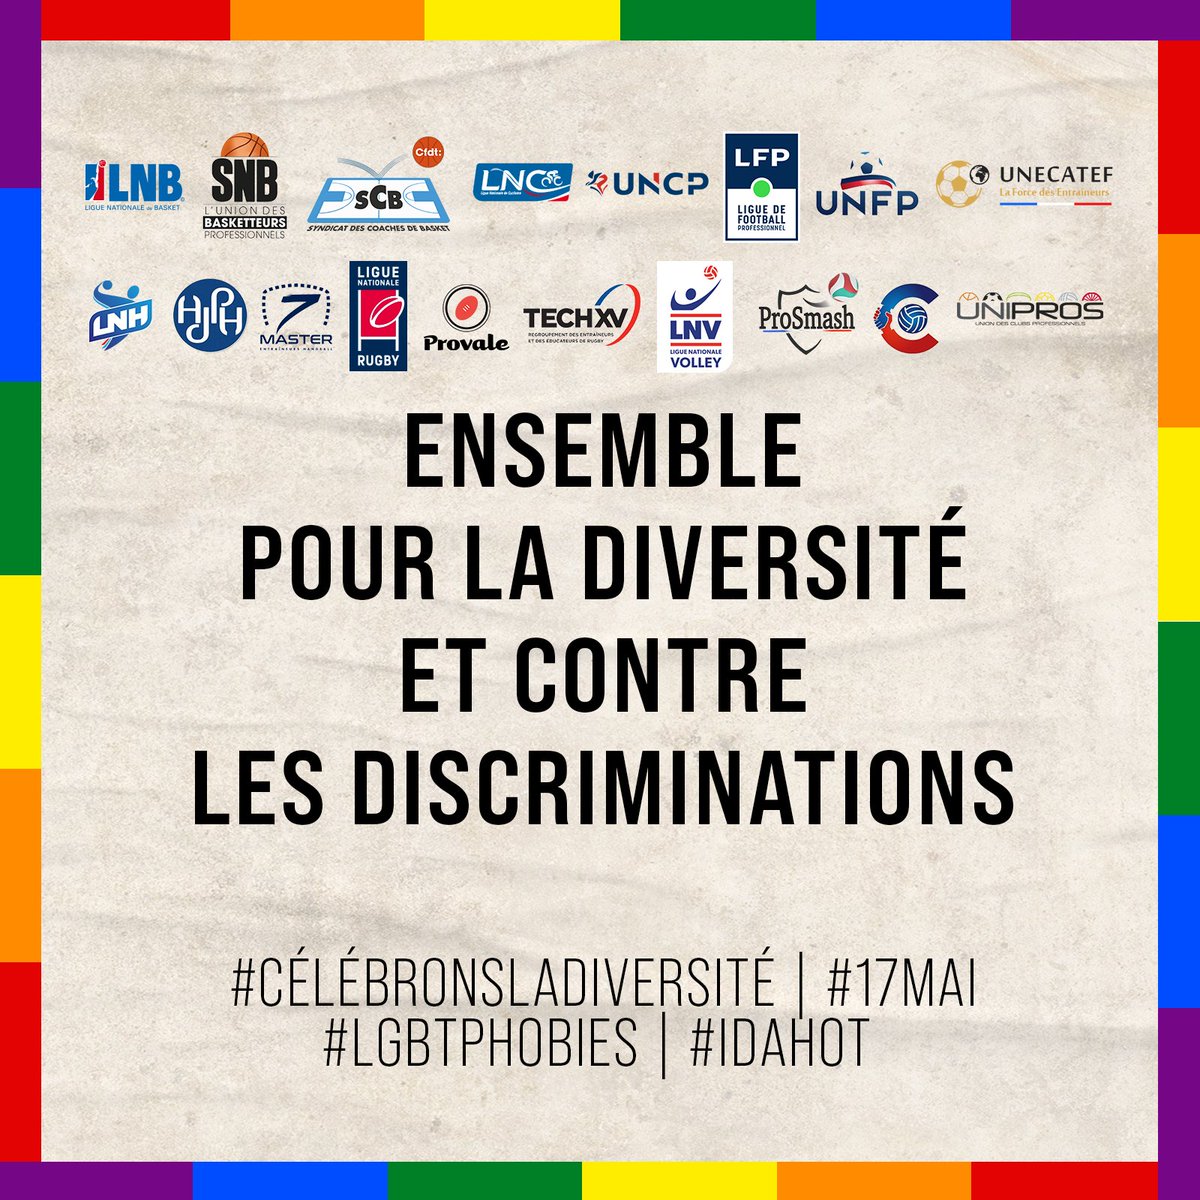 TECH XV, en tant que membre de la @FepEntraineurs, s’associe pour promouvoir la diversité et lutter contre toutes les formes de discriminations. #CélébronsLaDiversité

@VBCoachinside @SCB_BASKET @7MasterHand @UNECATEF